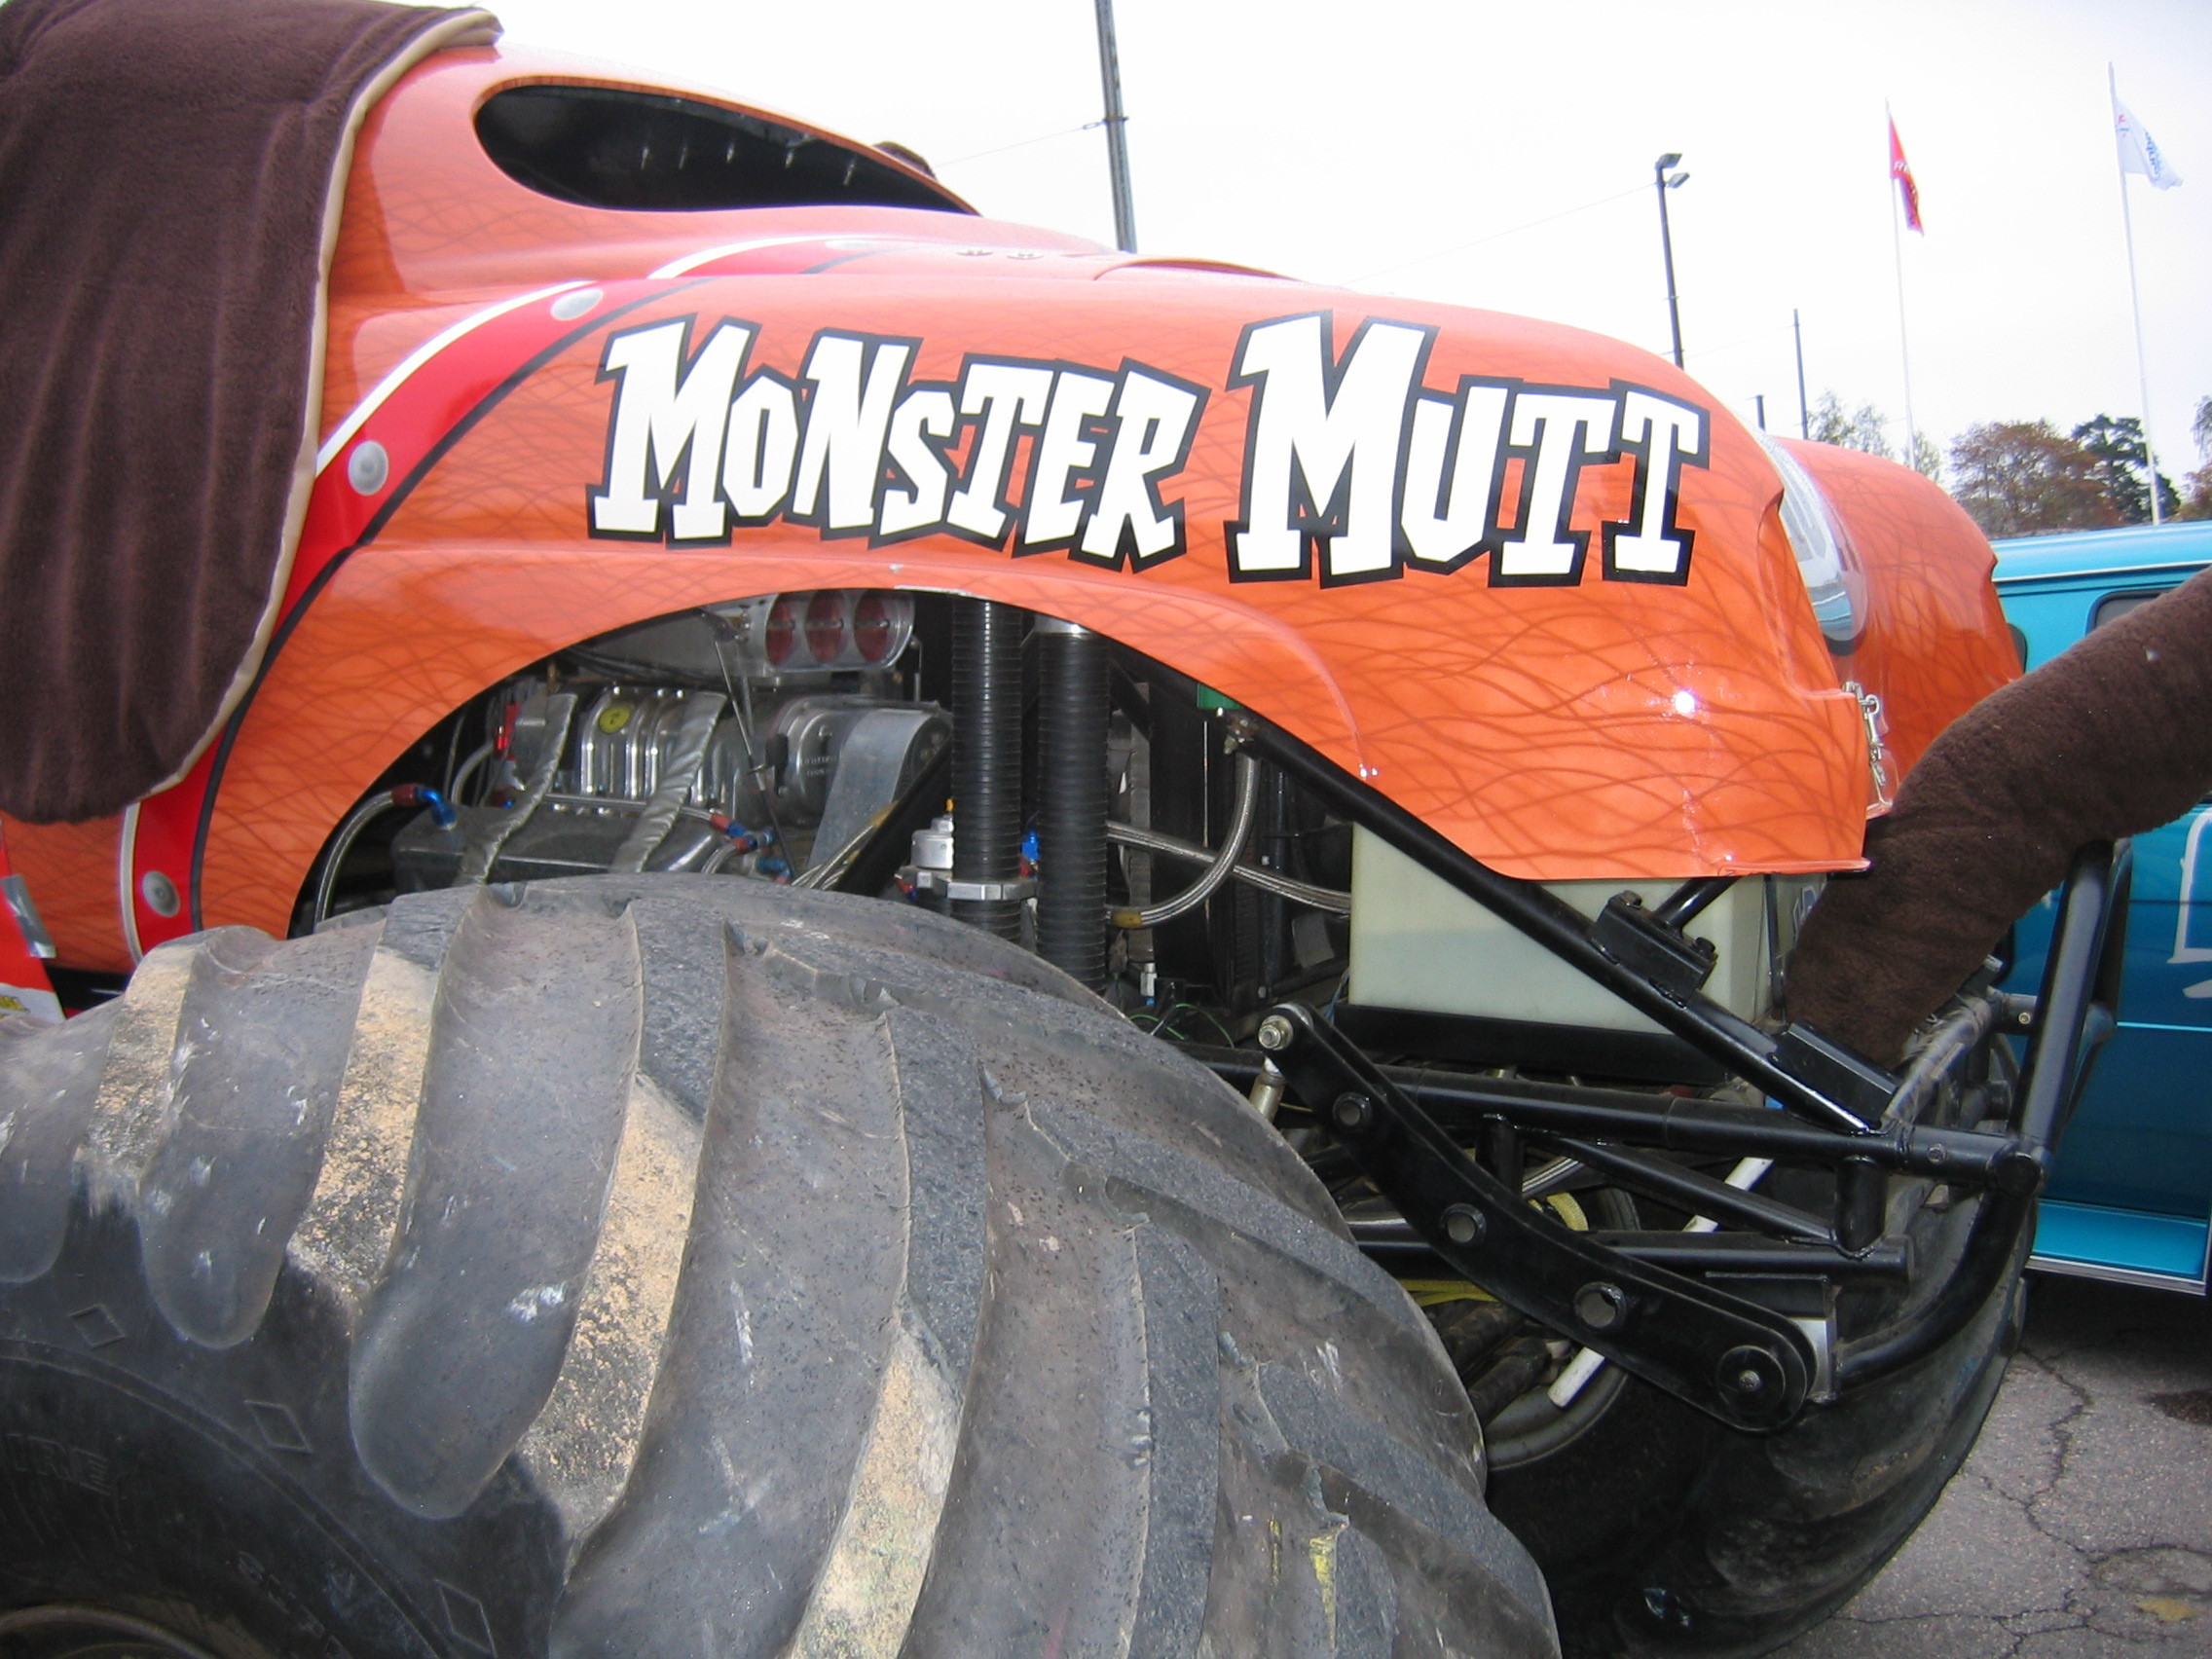 X.Treme Car Show, Monster Mutt